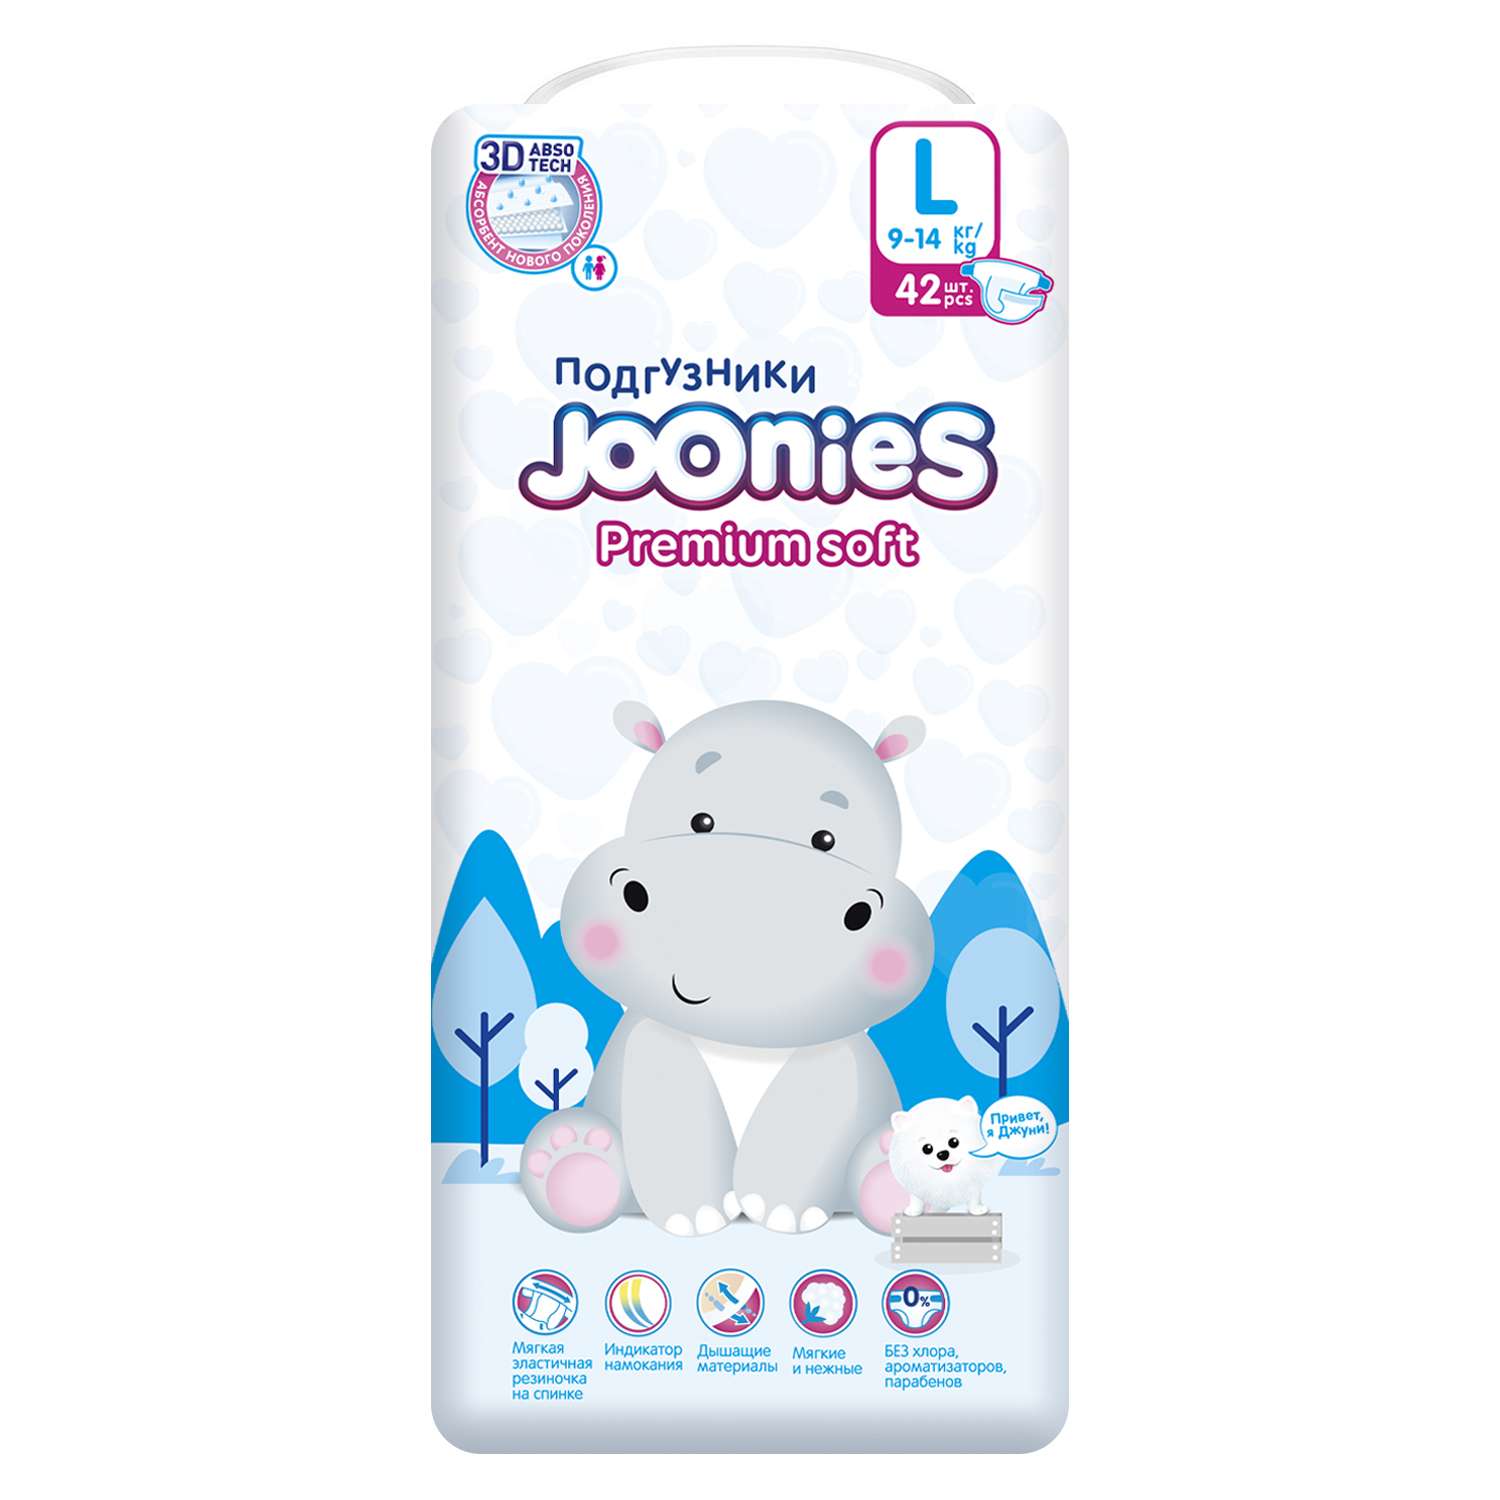 Подгузники Joonies Premium Soft L 9-14кг 42шт - фото 3